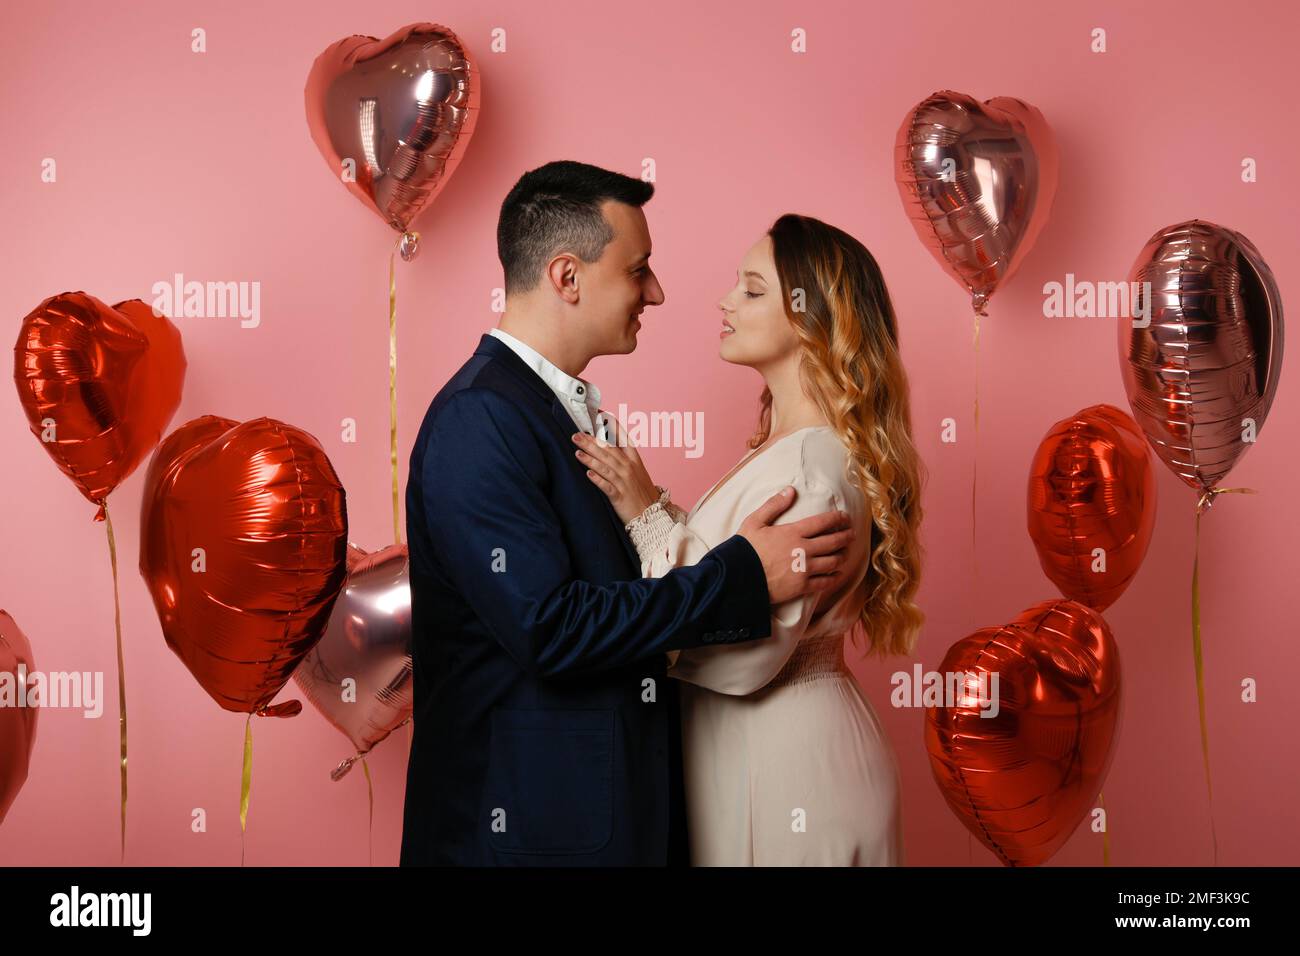 Eine Frau in einem Kleid und ein Mann im Anzug auf dem Hintergrund von Herzballons. Love on Valentine's Day, Romance and love, datiert am 14. Februar. Wunderschön Stockfoto